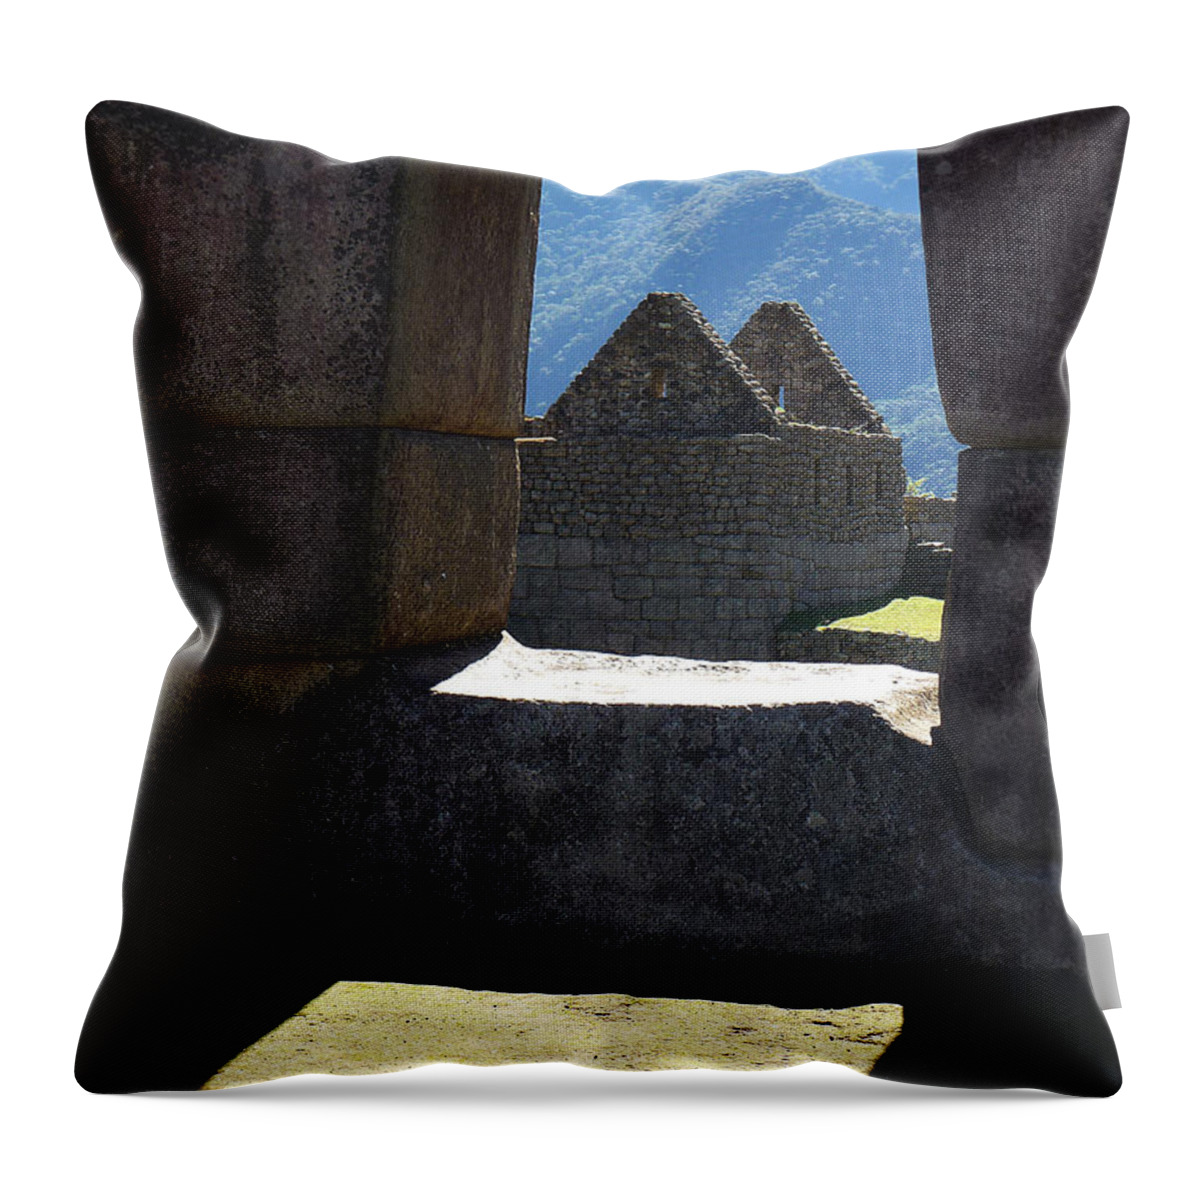 Peru Throw Pillow featuring the photograph Machu Picchu Peru 6 by Xueling Zou